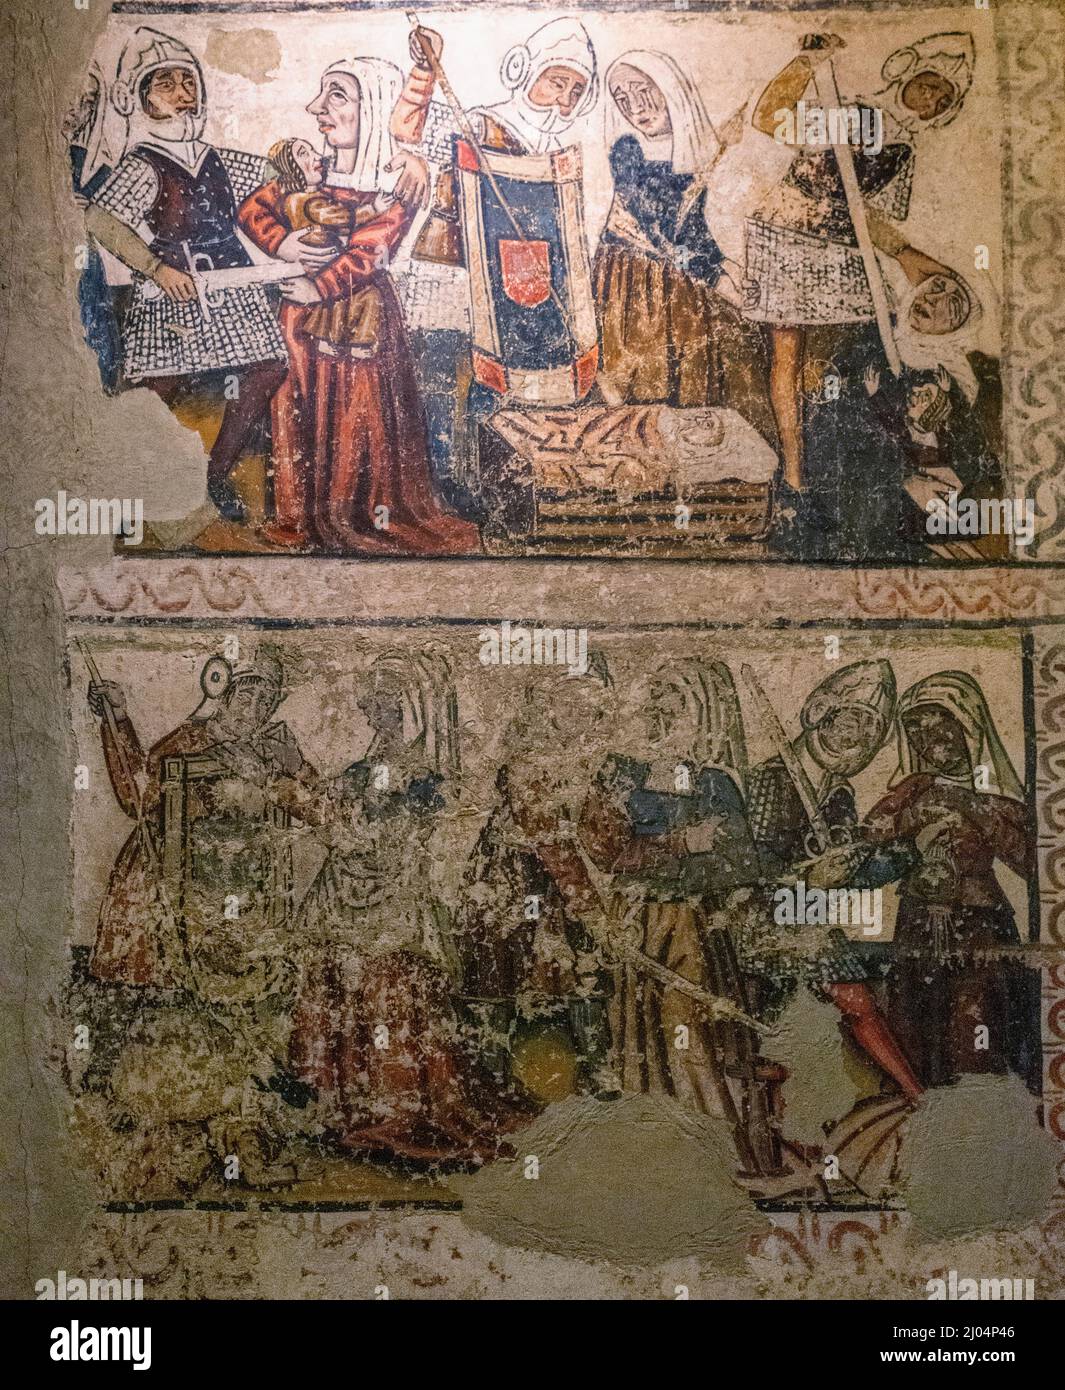 Pinturas murales de la nave central, siglo 14. Detalle. Catedral de Mondoñedo. Provincia de Lugo, Galicia, España. Stock Photo